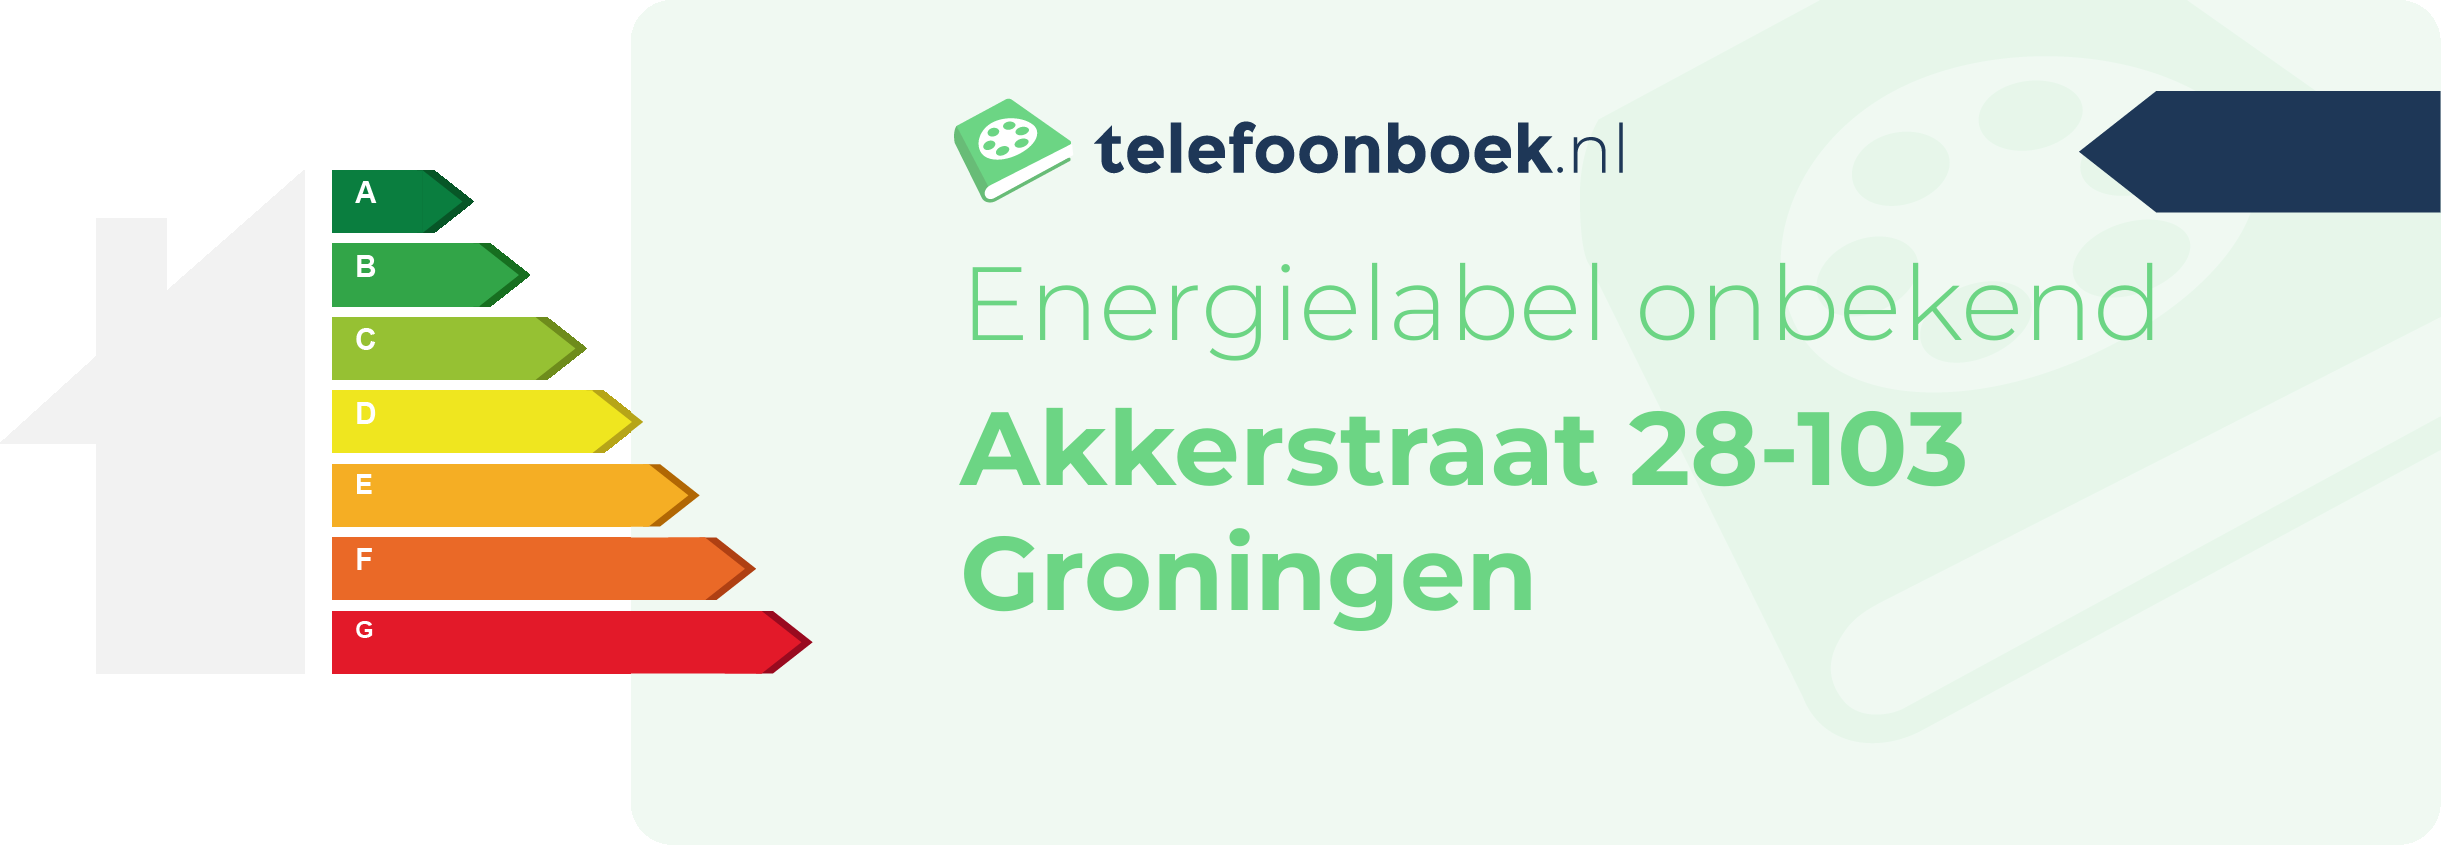 Energielabel Akkerstraat 28-103 Groningen